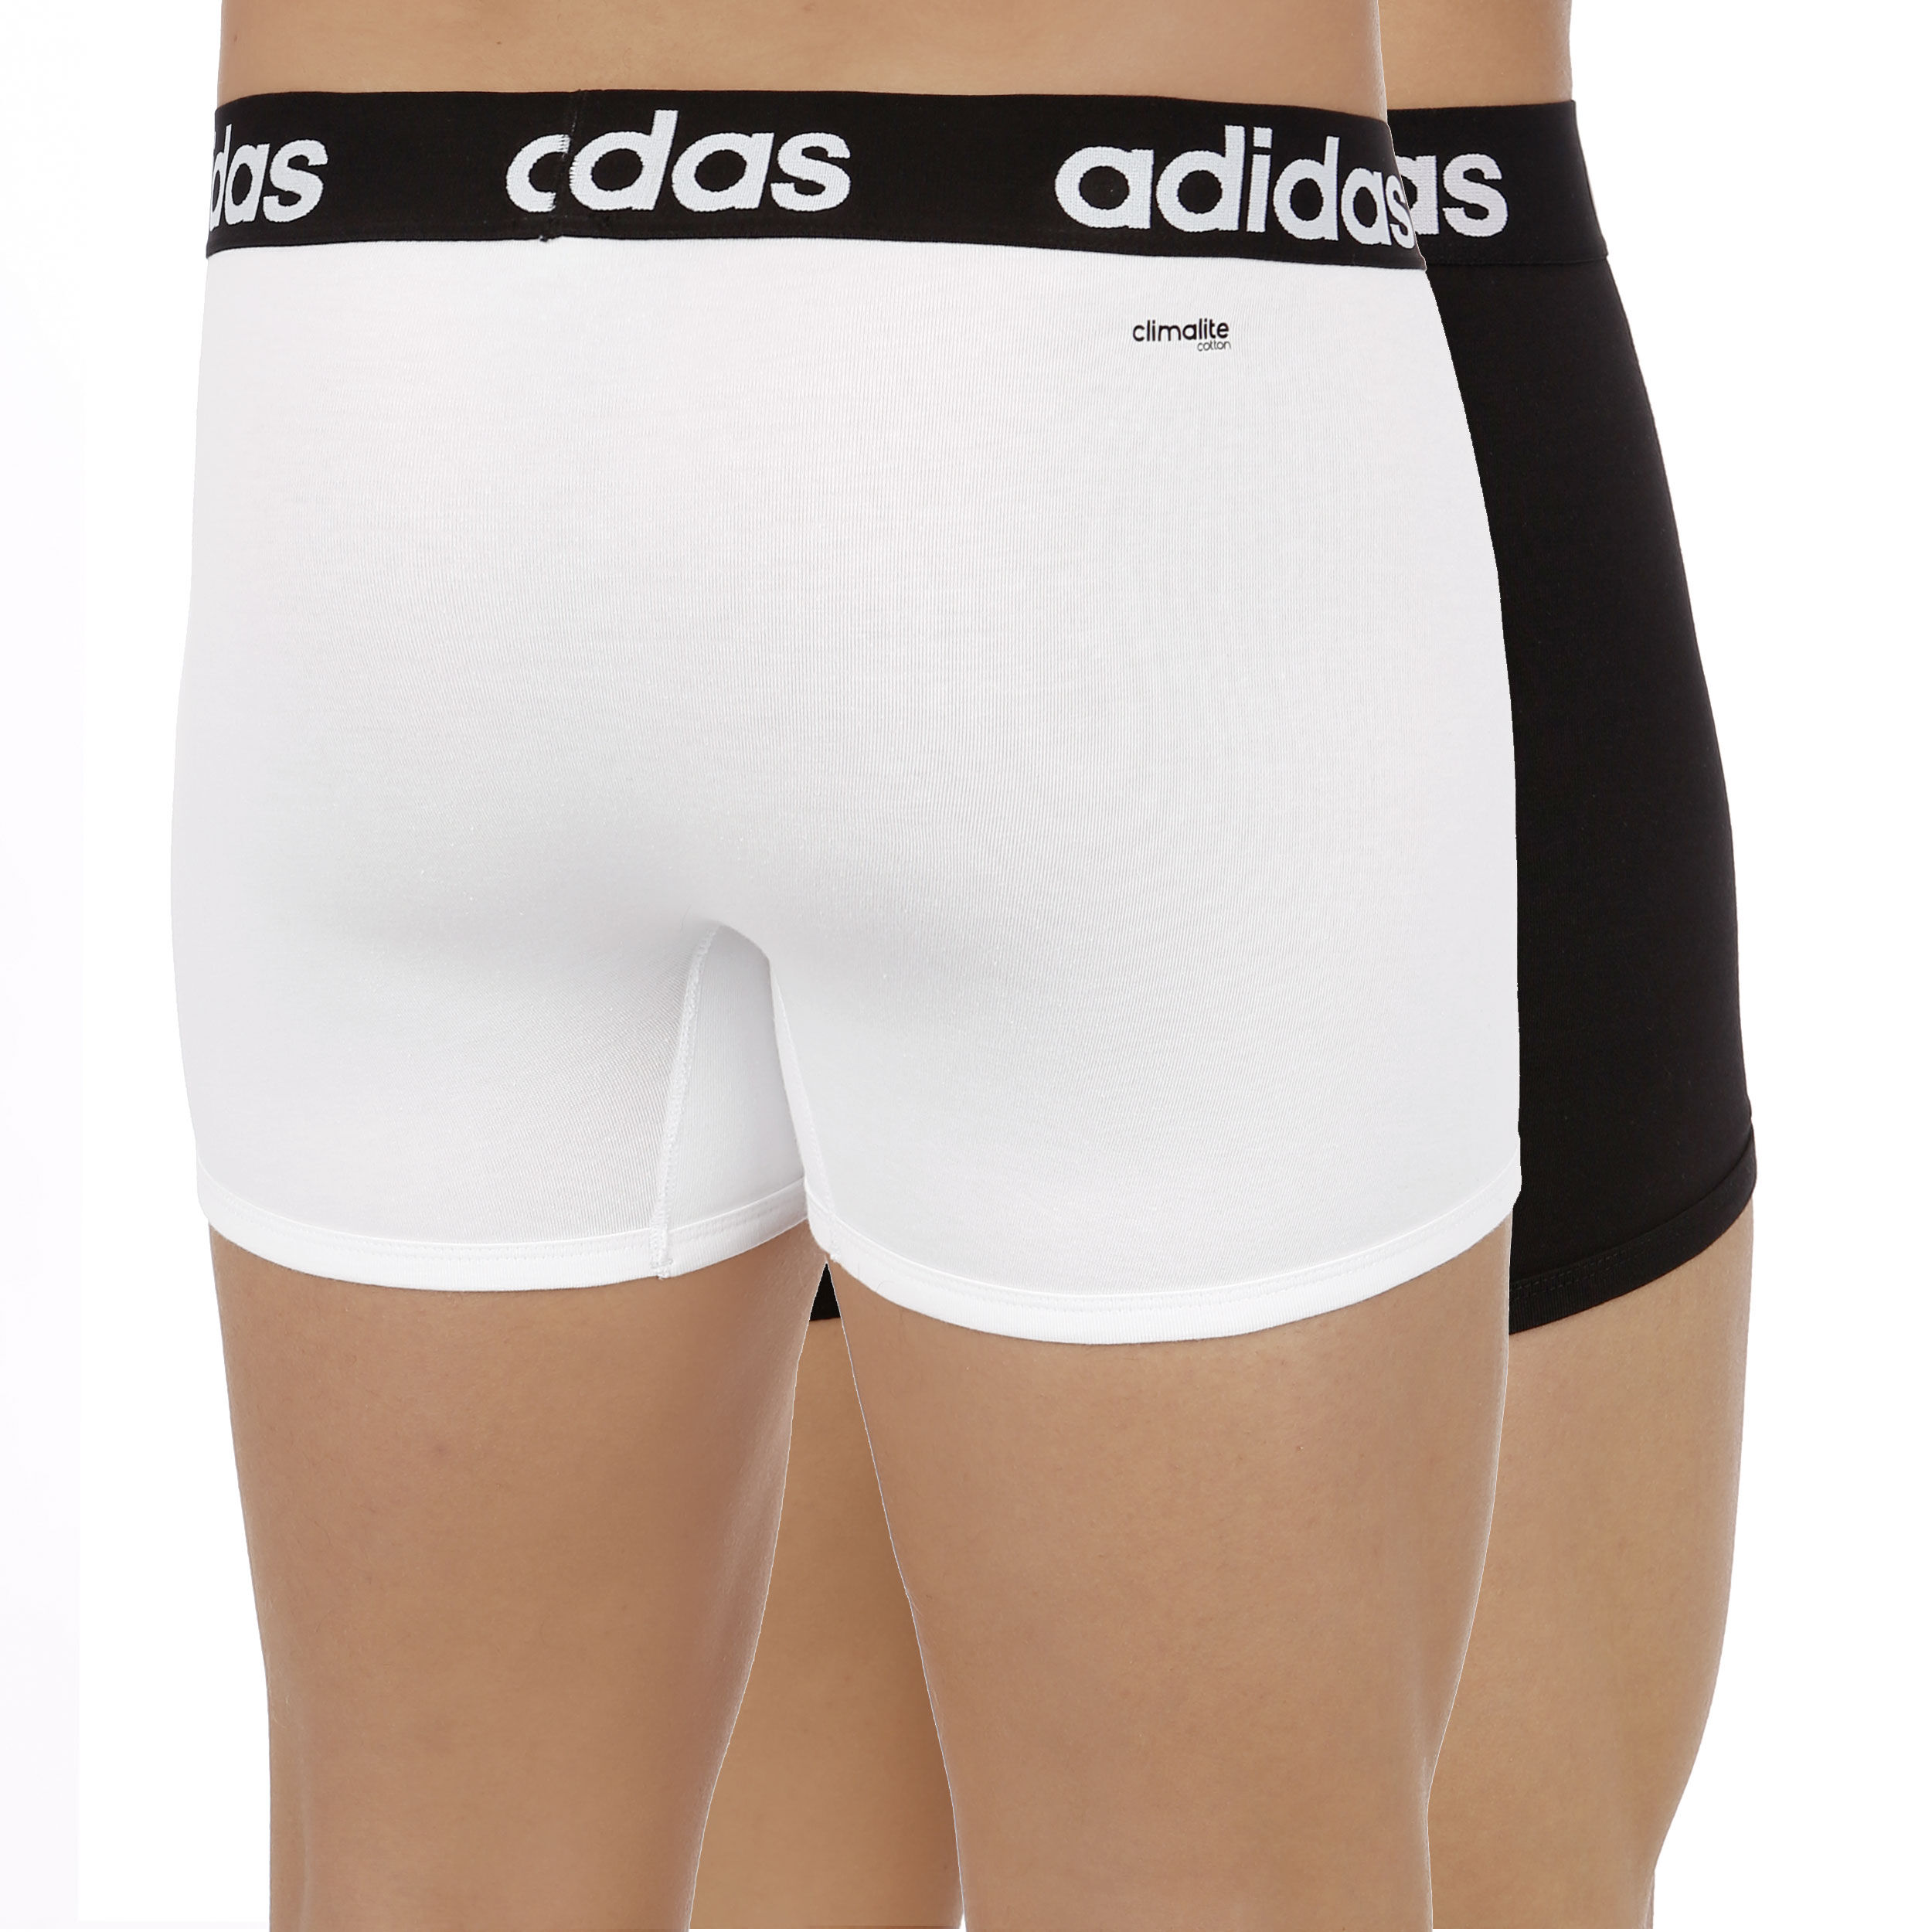 adidas boxer shorts uk